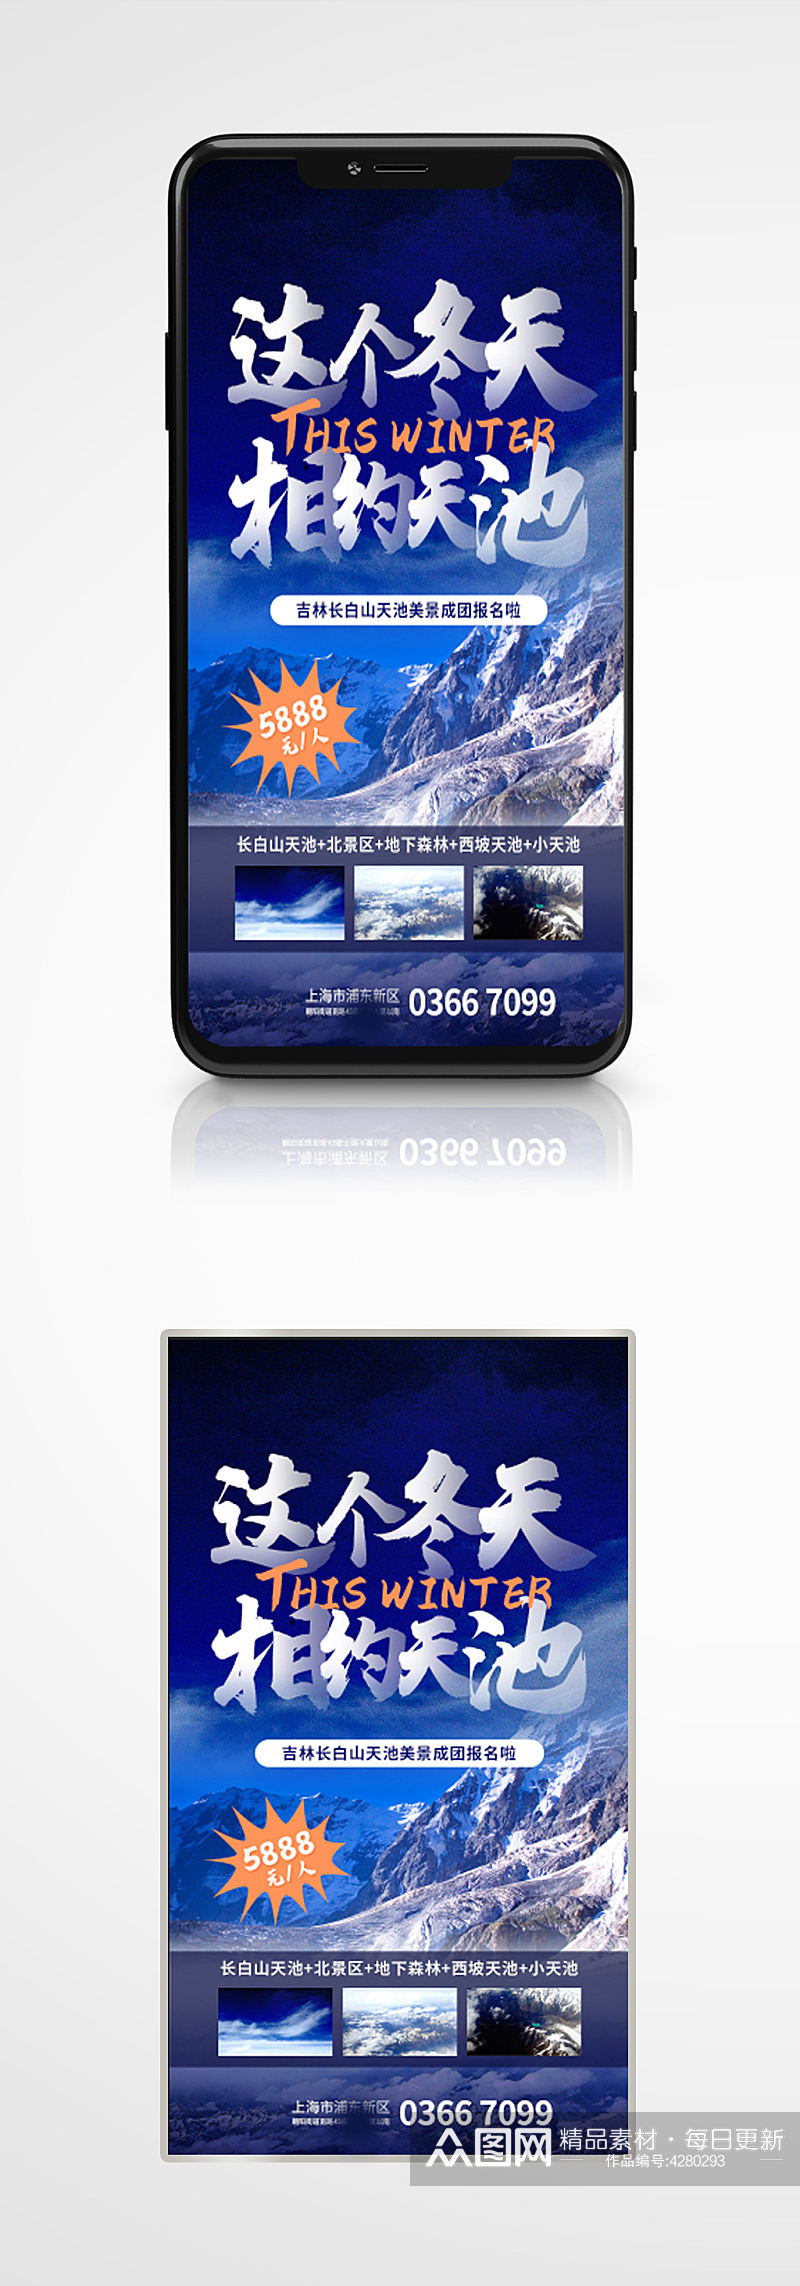 蓝色雪景旅行宣传手机海报旅游度假滑雪素材